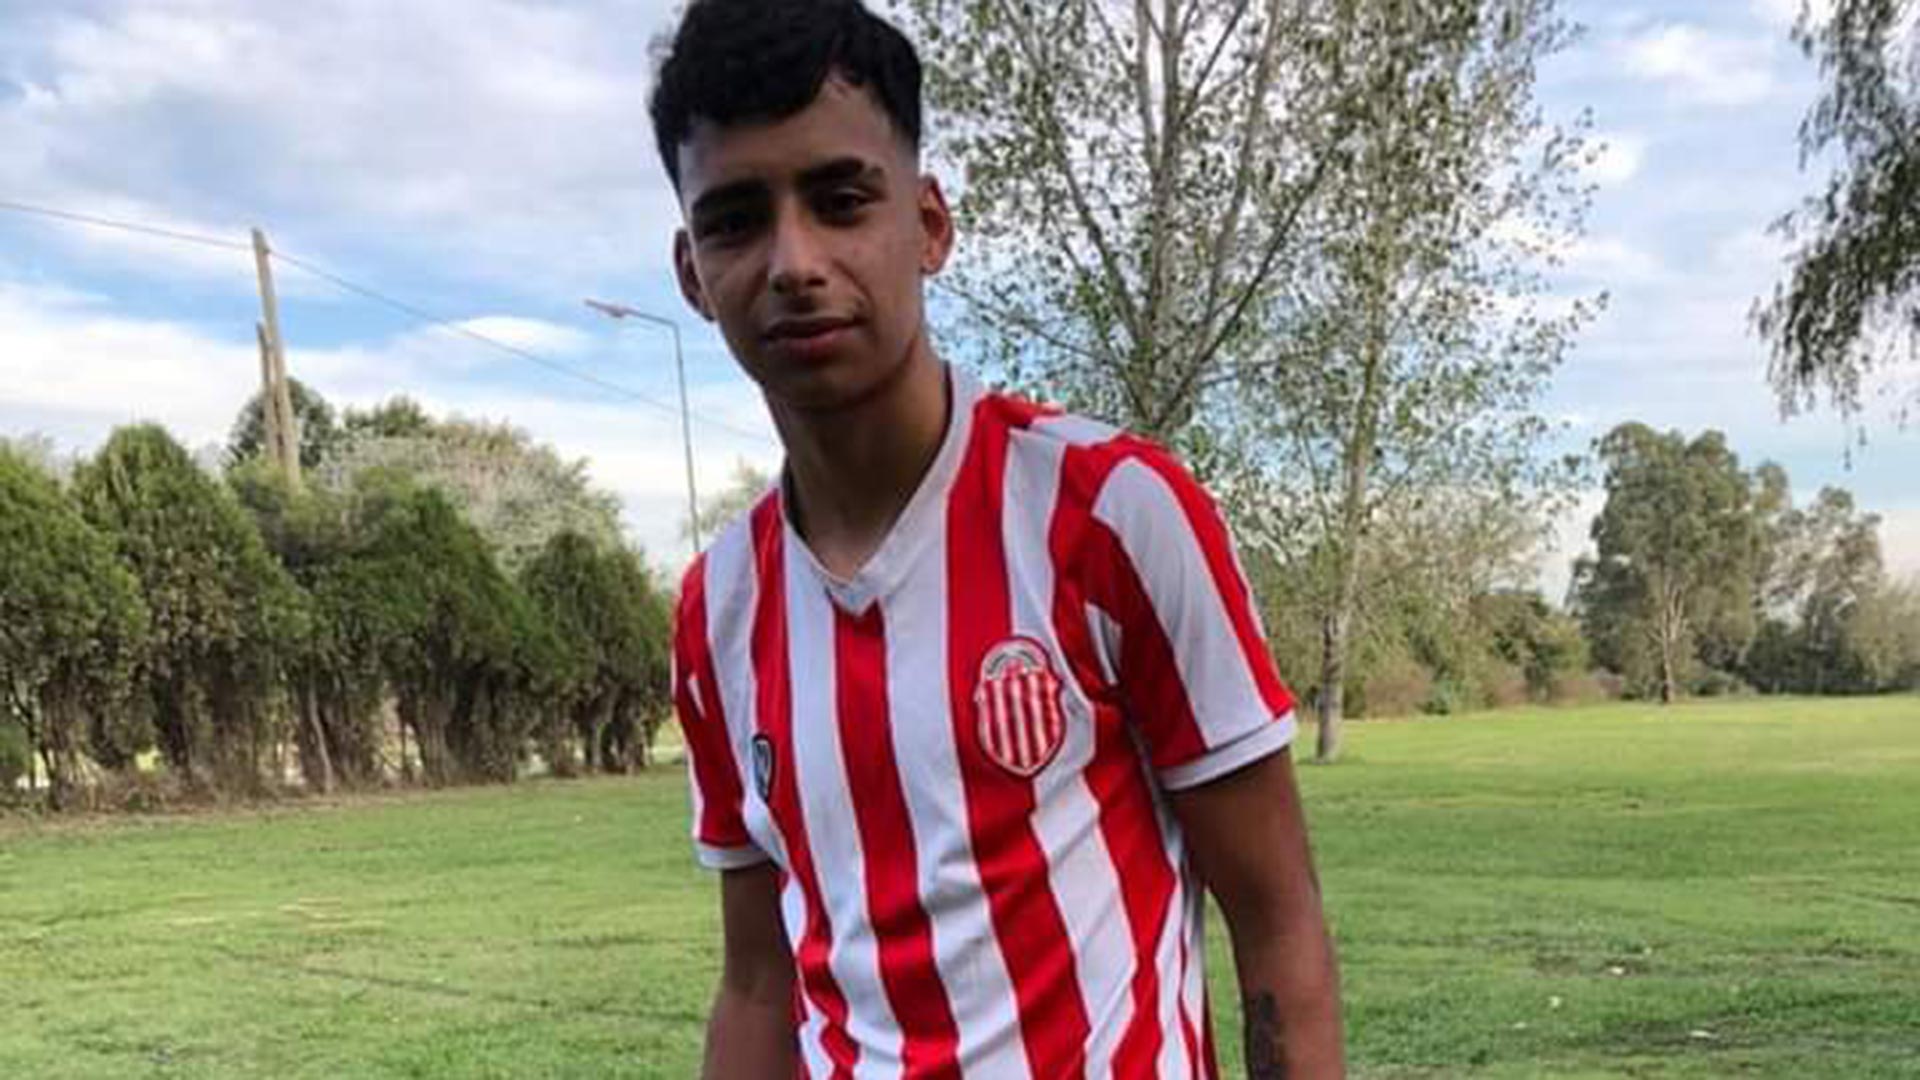 El joven de 17 años jugaba en las inferiores del club Barracas Central